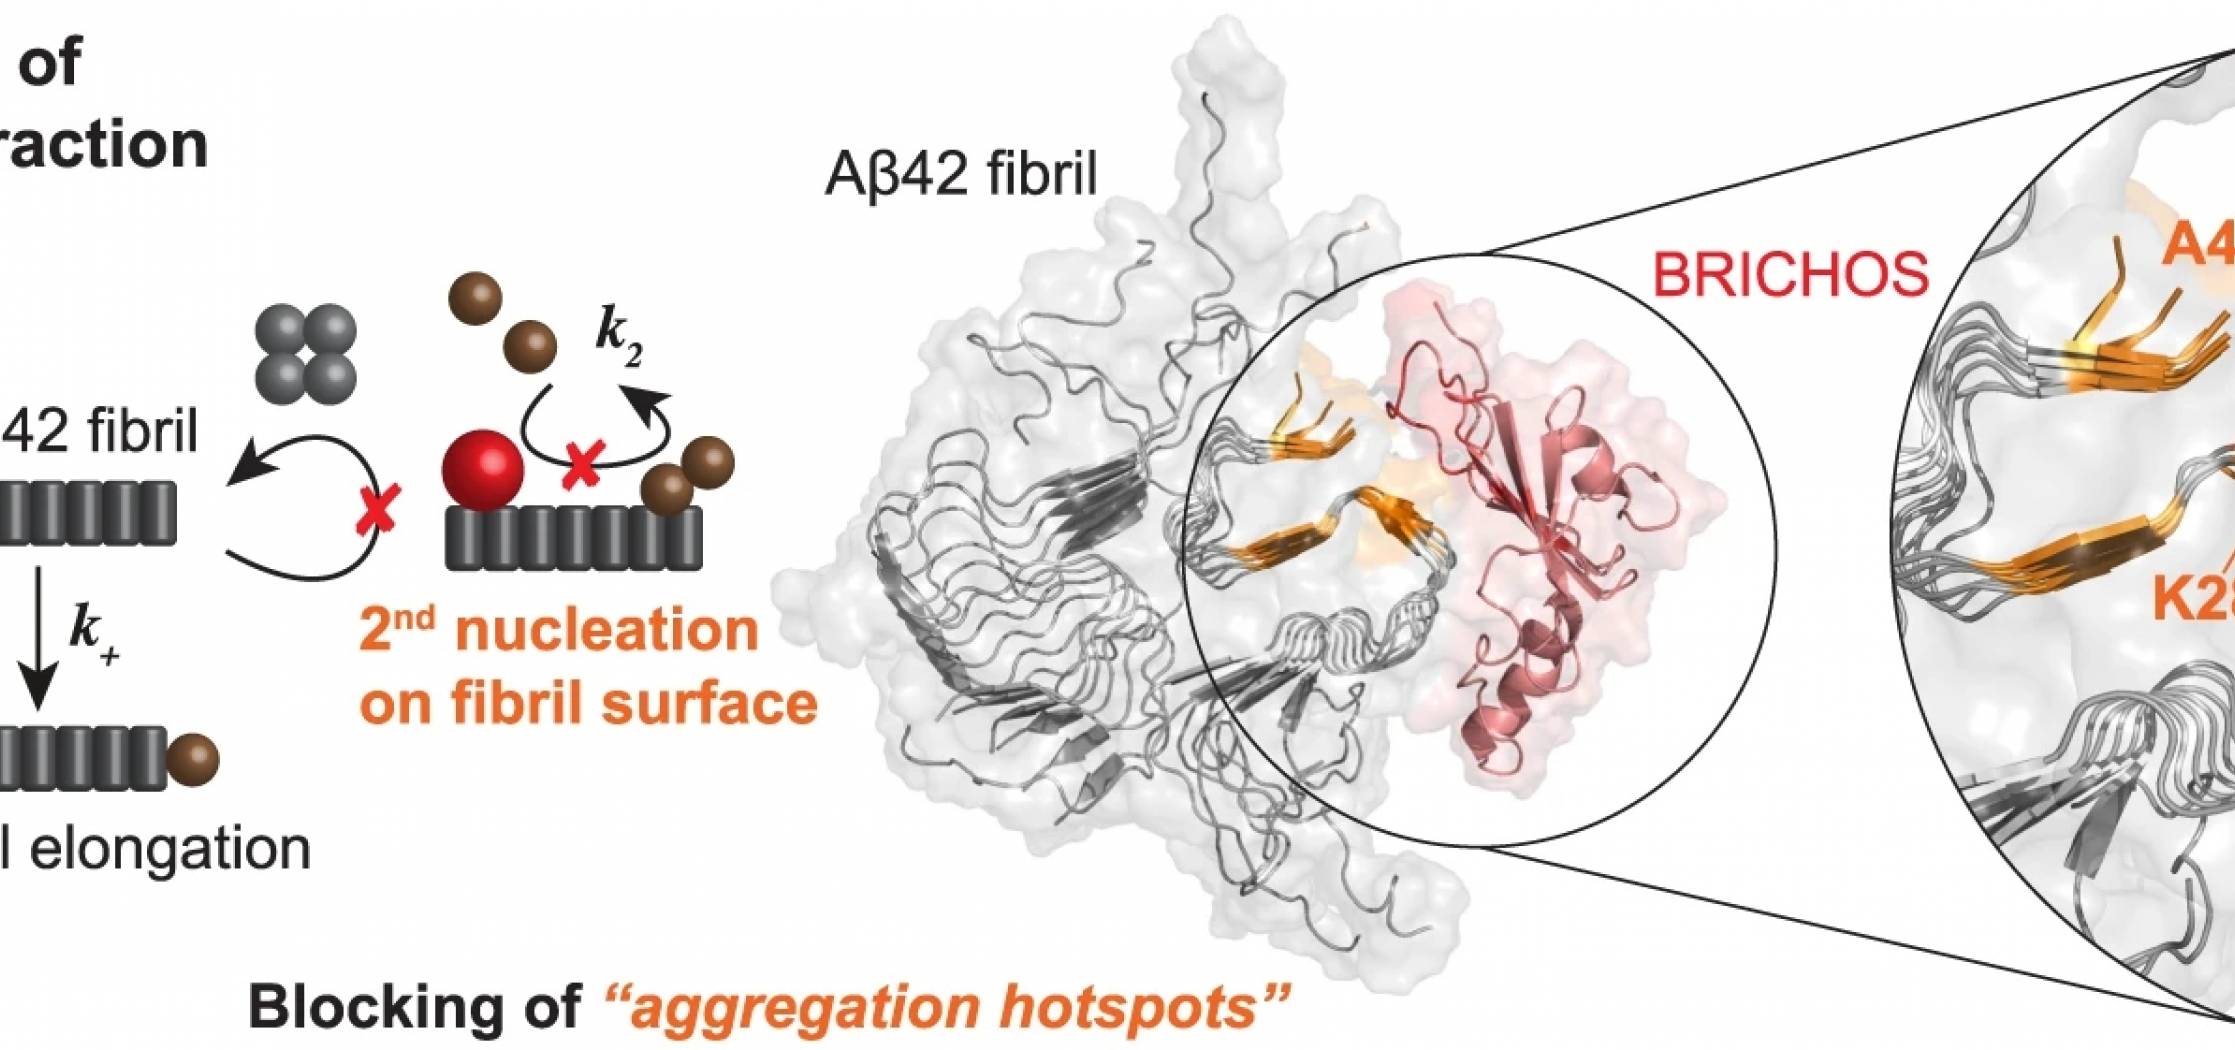 Identification de sites potentiels d’agrégation sur les fibrilles de Aβ42, bloqués par le domaine BRICHOS de type chaperone anti-amyloïde.